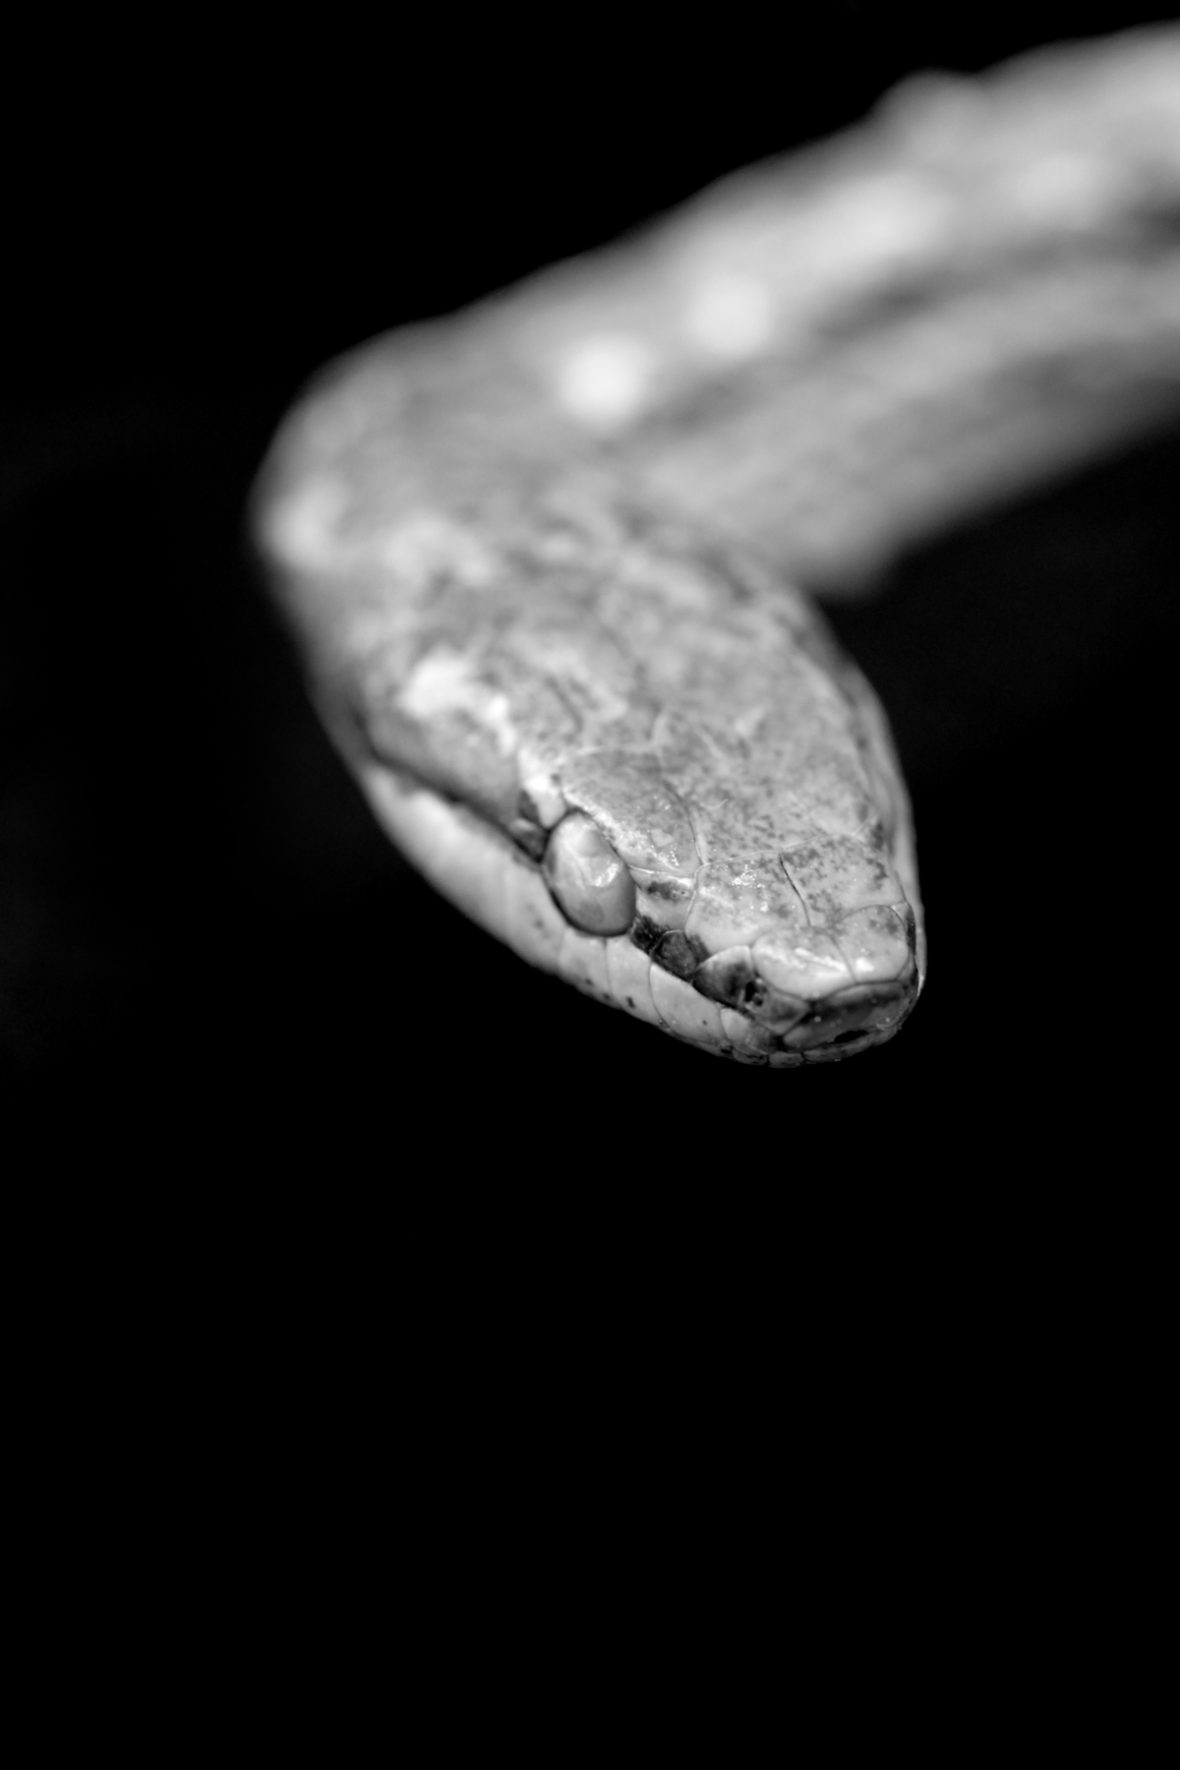 Der St. Croix Racer ist eine Schlangenart aus der Familie der Colubridae, die auf den Jungferninseln vorkam und vermutlich seit 1898 ausgestorben ist.